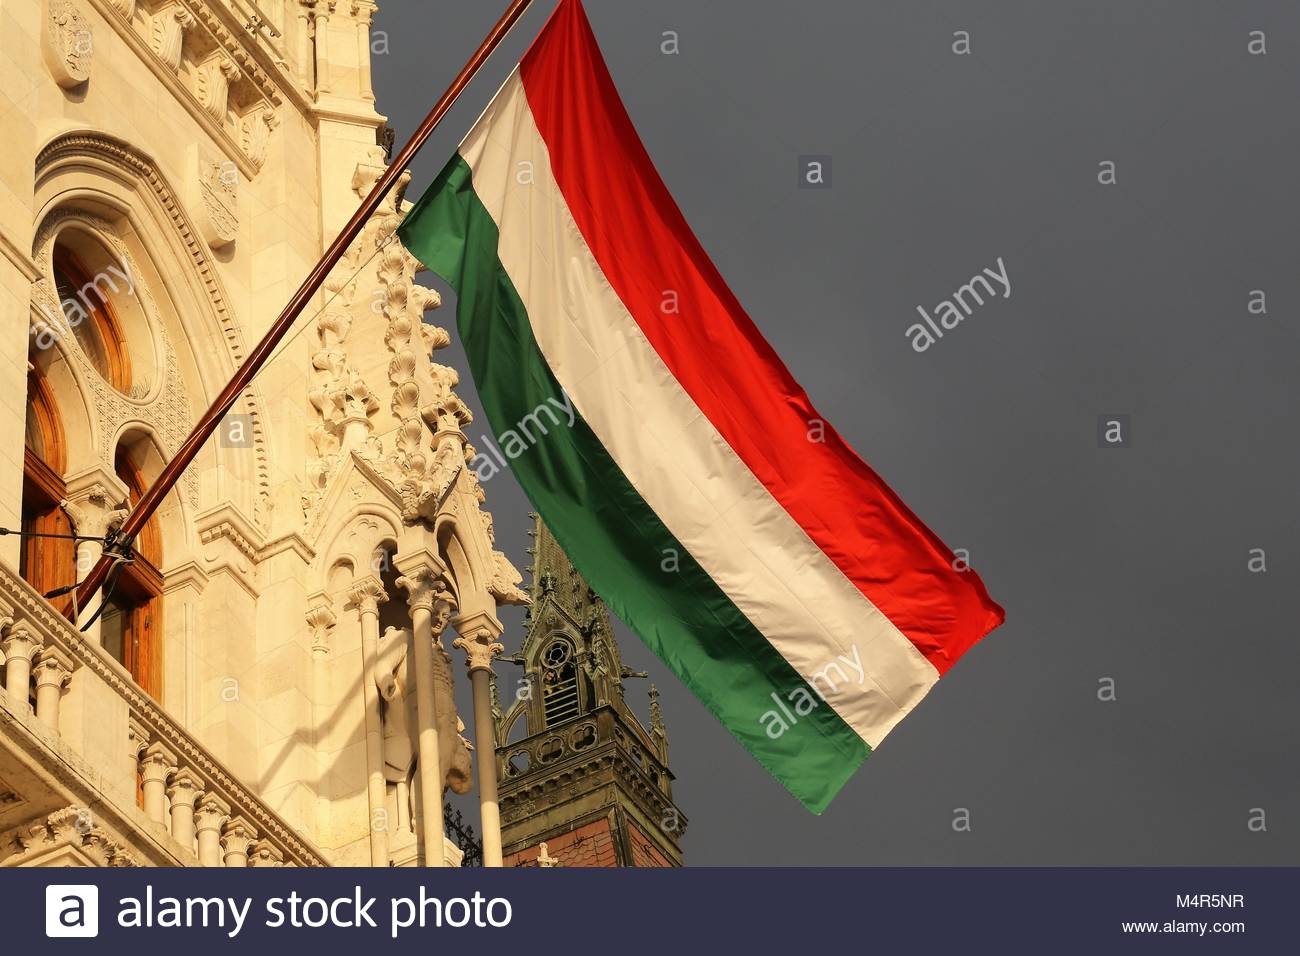 Le drapeau national hongrois en accrochant la lumière de l'après-midi d'or que les élections générales appraches. Il aura lieu le 8 avril 2018. Banque D'Images